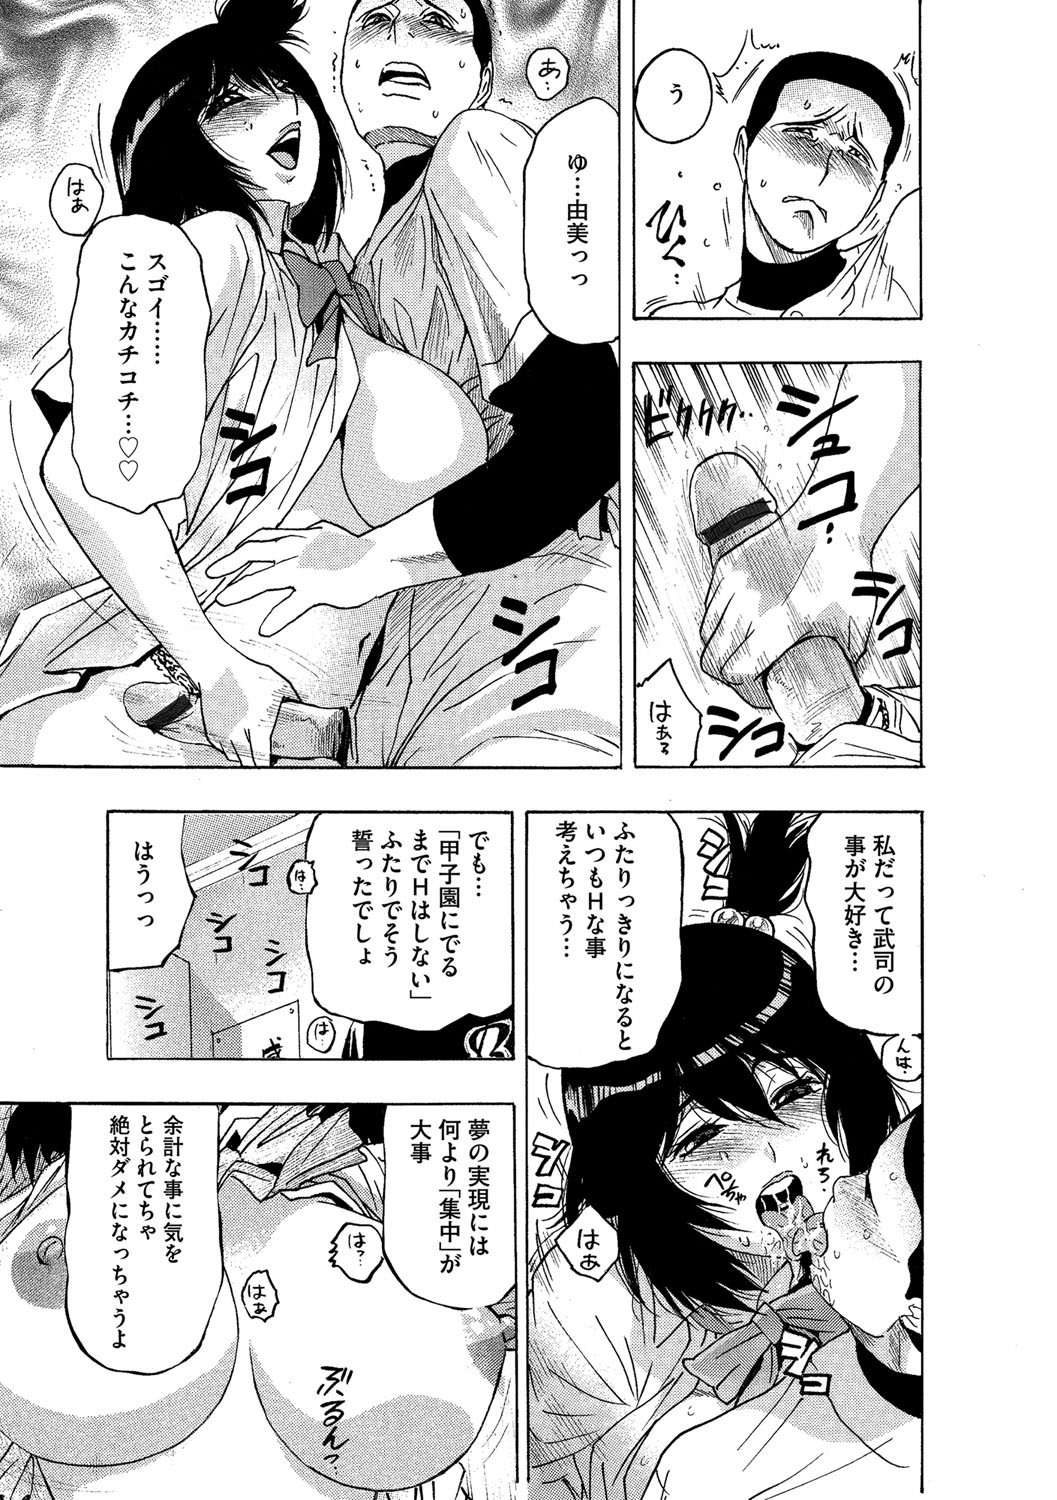 (岡田正尚) ネトラレ甲子園 page 5 full